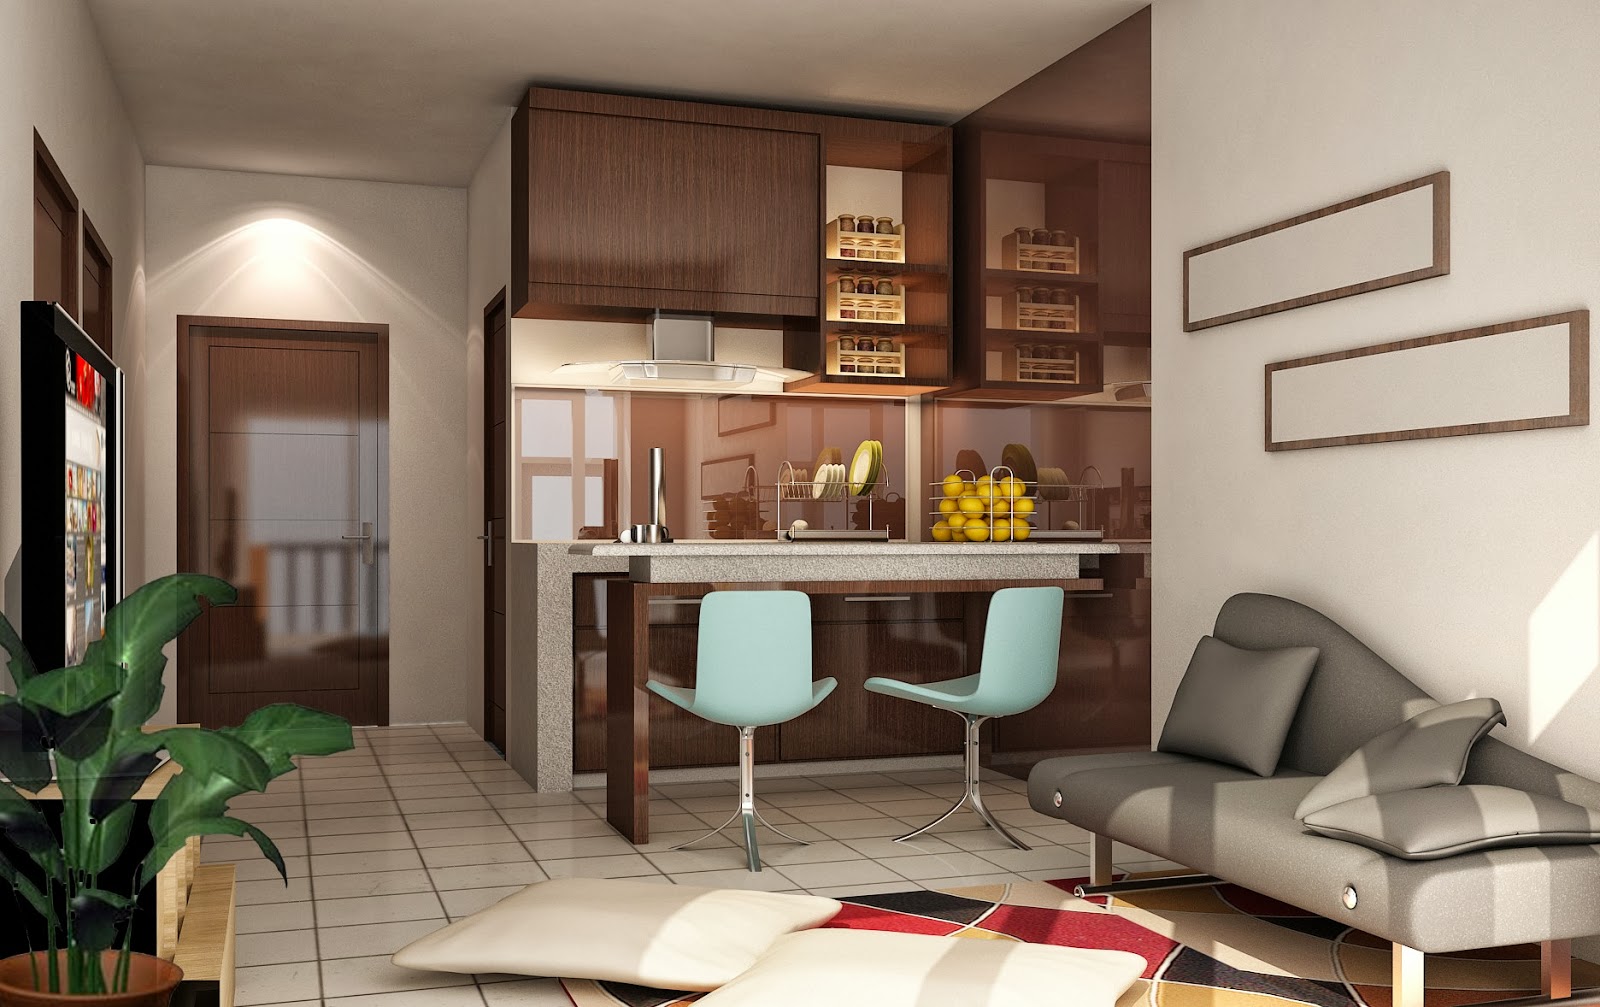 Jasa Desain Interior Rumah Minimalis Jasa Desain Rumah Online Di